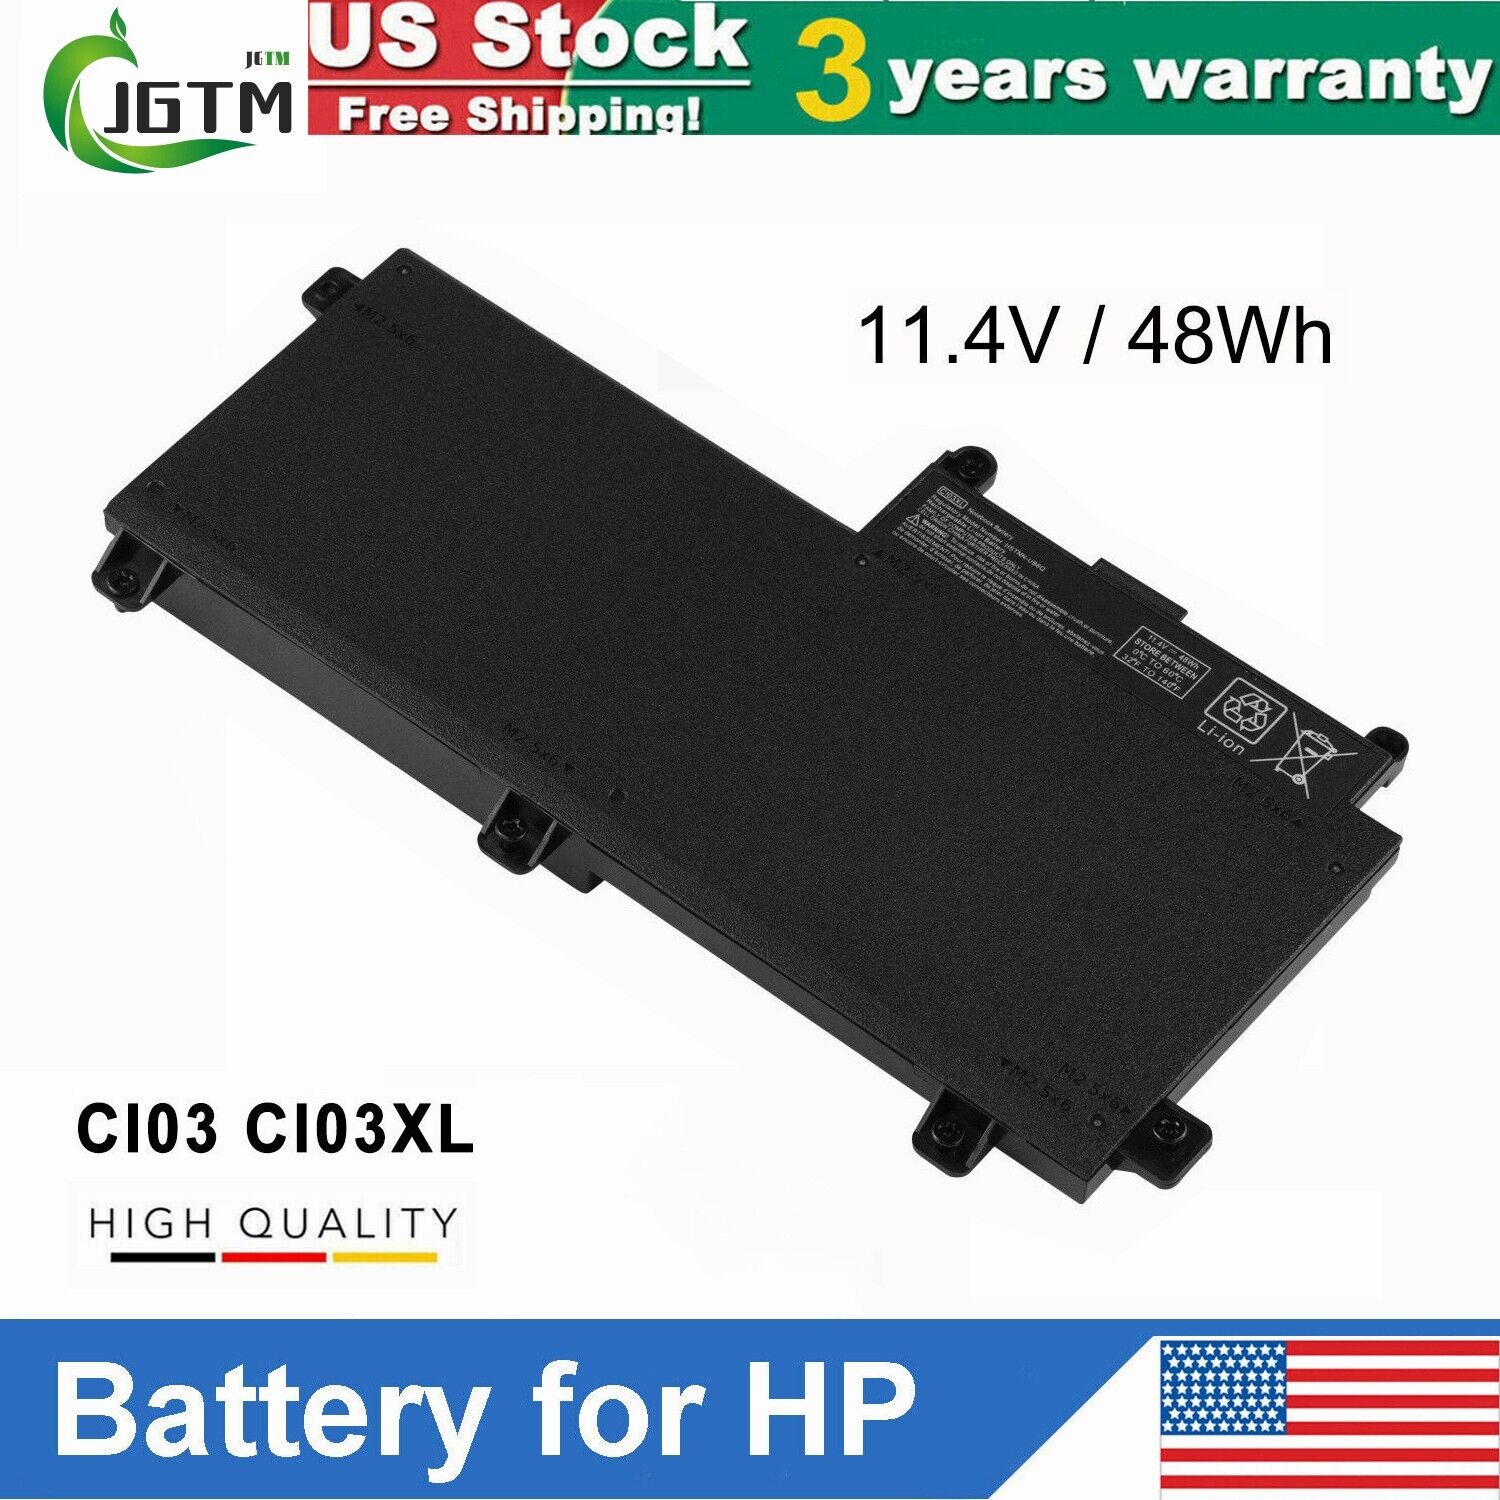 CI03XL Battery for HP ProBook 640 G2 645 G2 650 G2 655 G2 801554-001 Notebook US